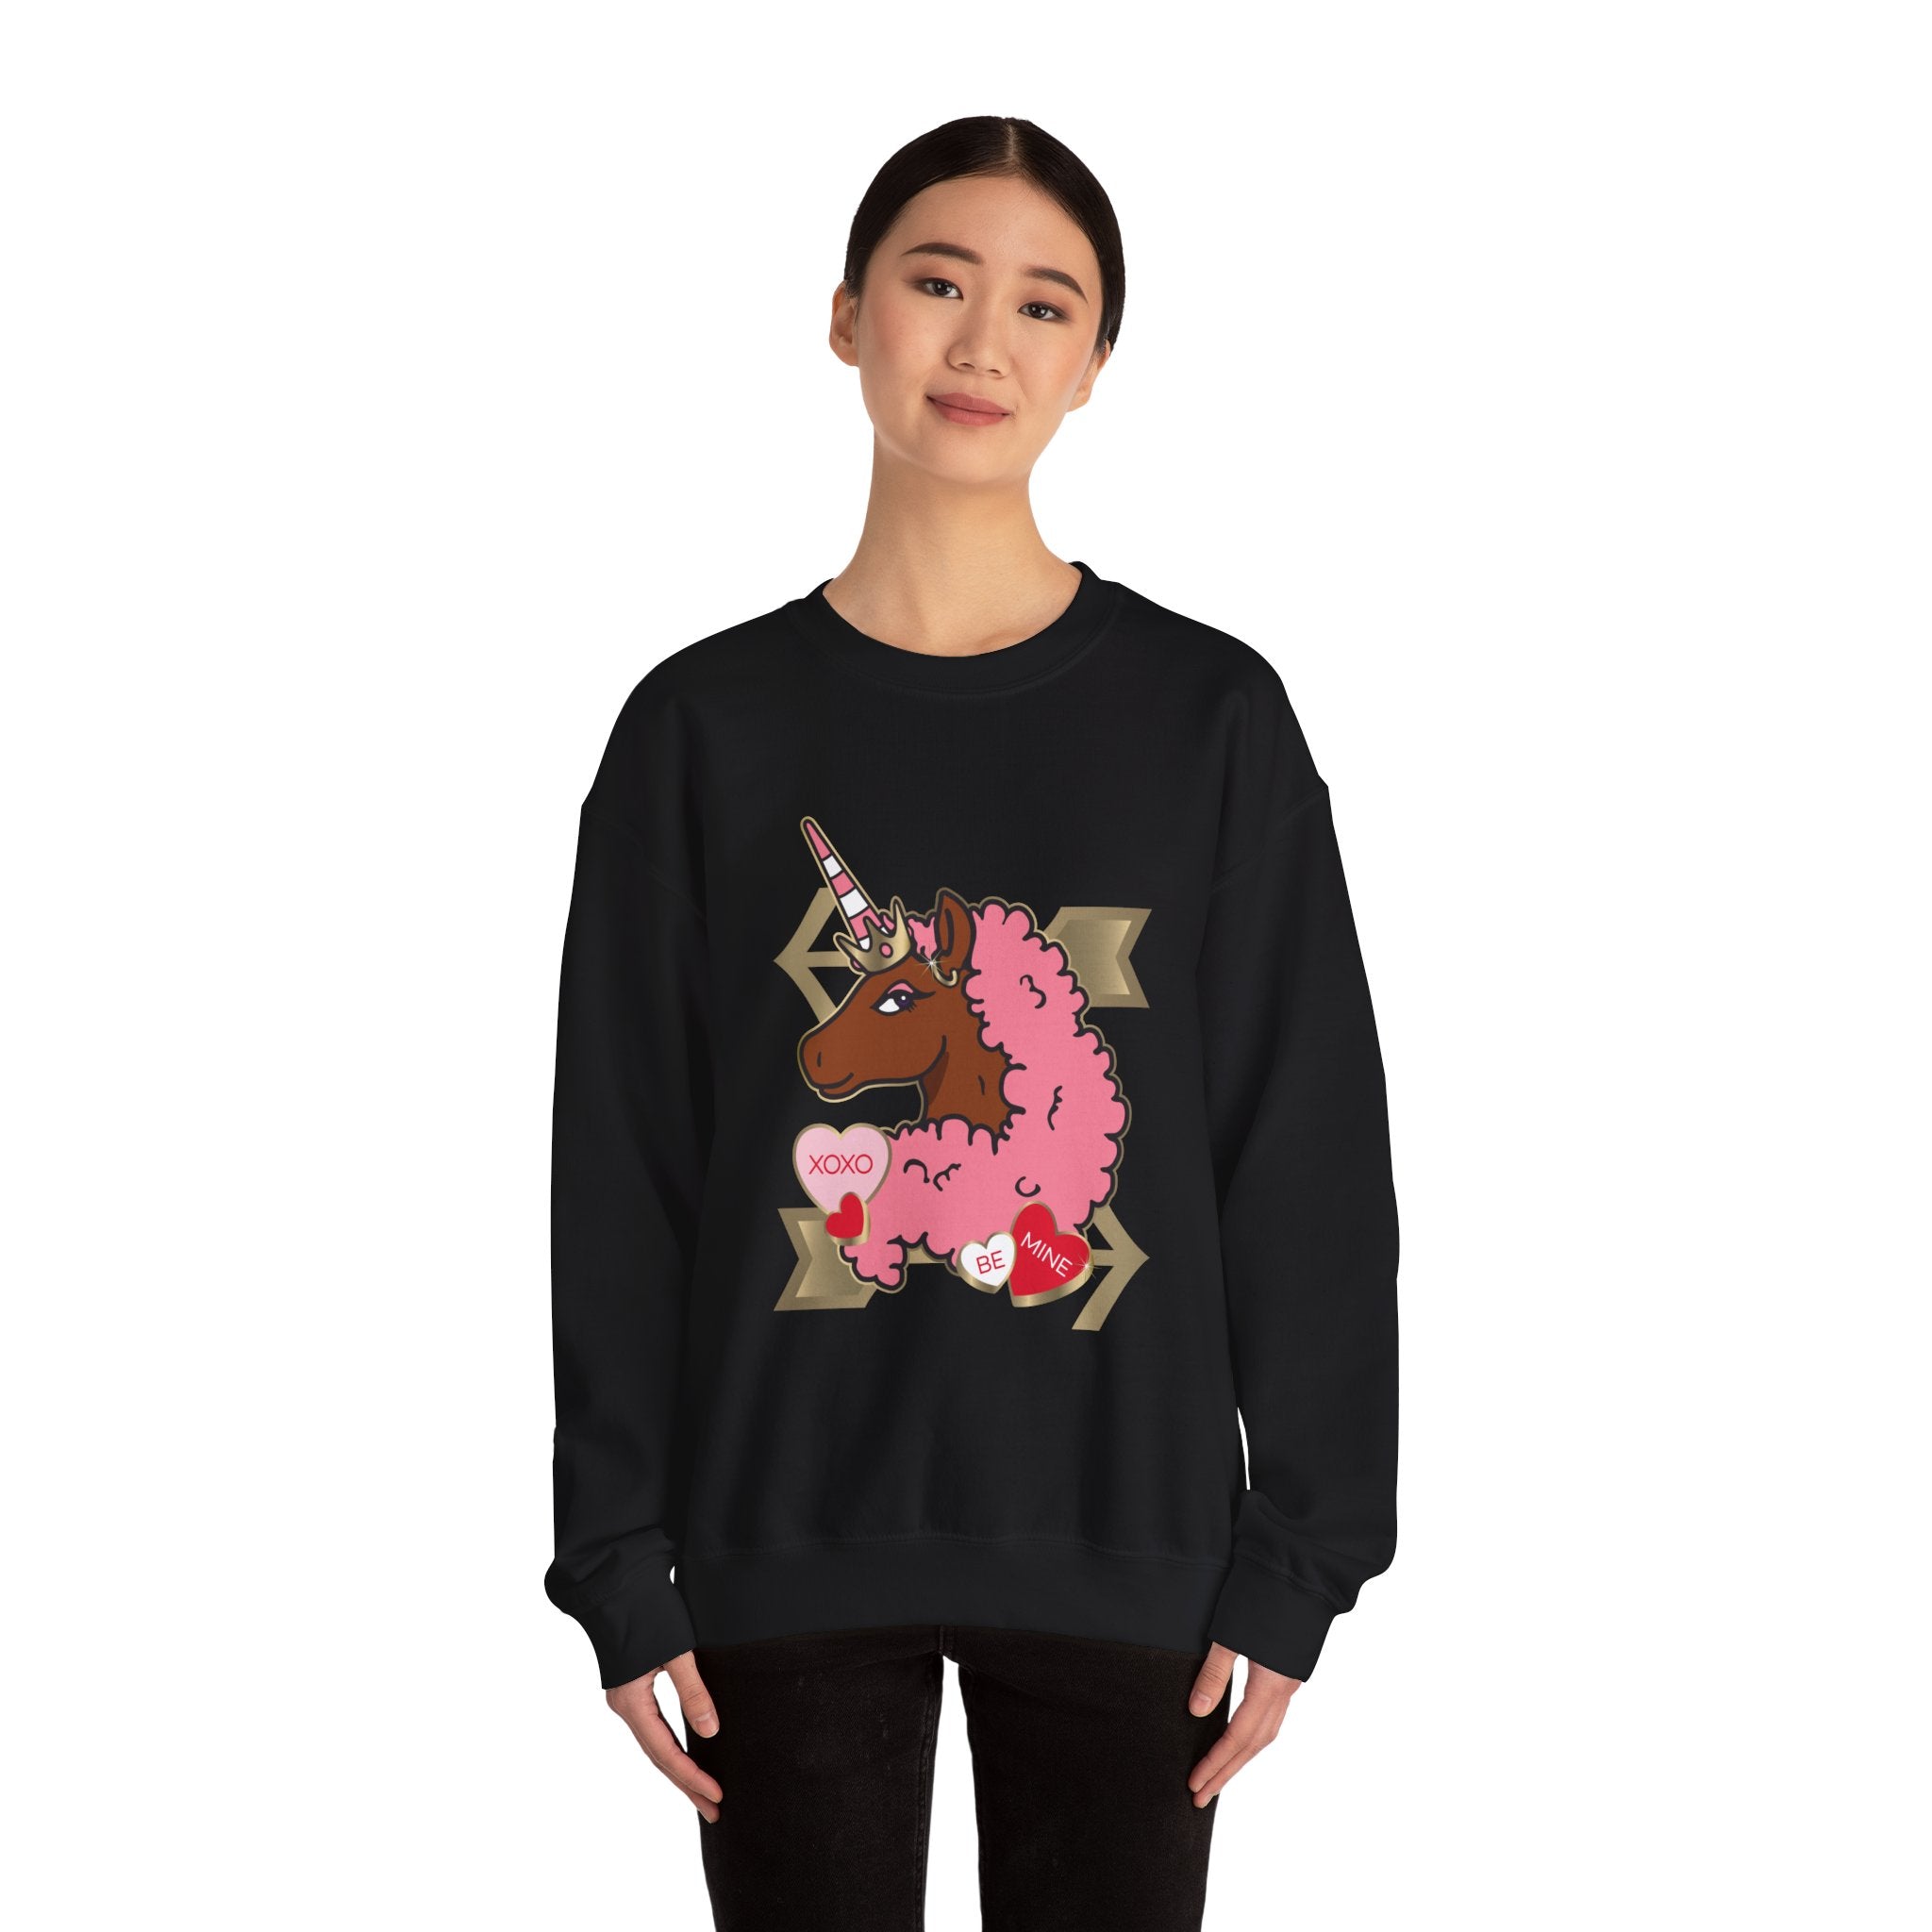 Afro Unicorn Love Sweatshirt Adult Tee